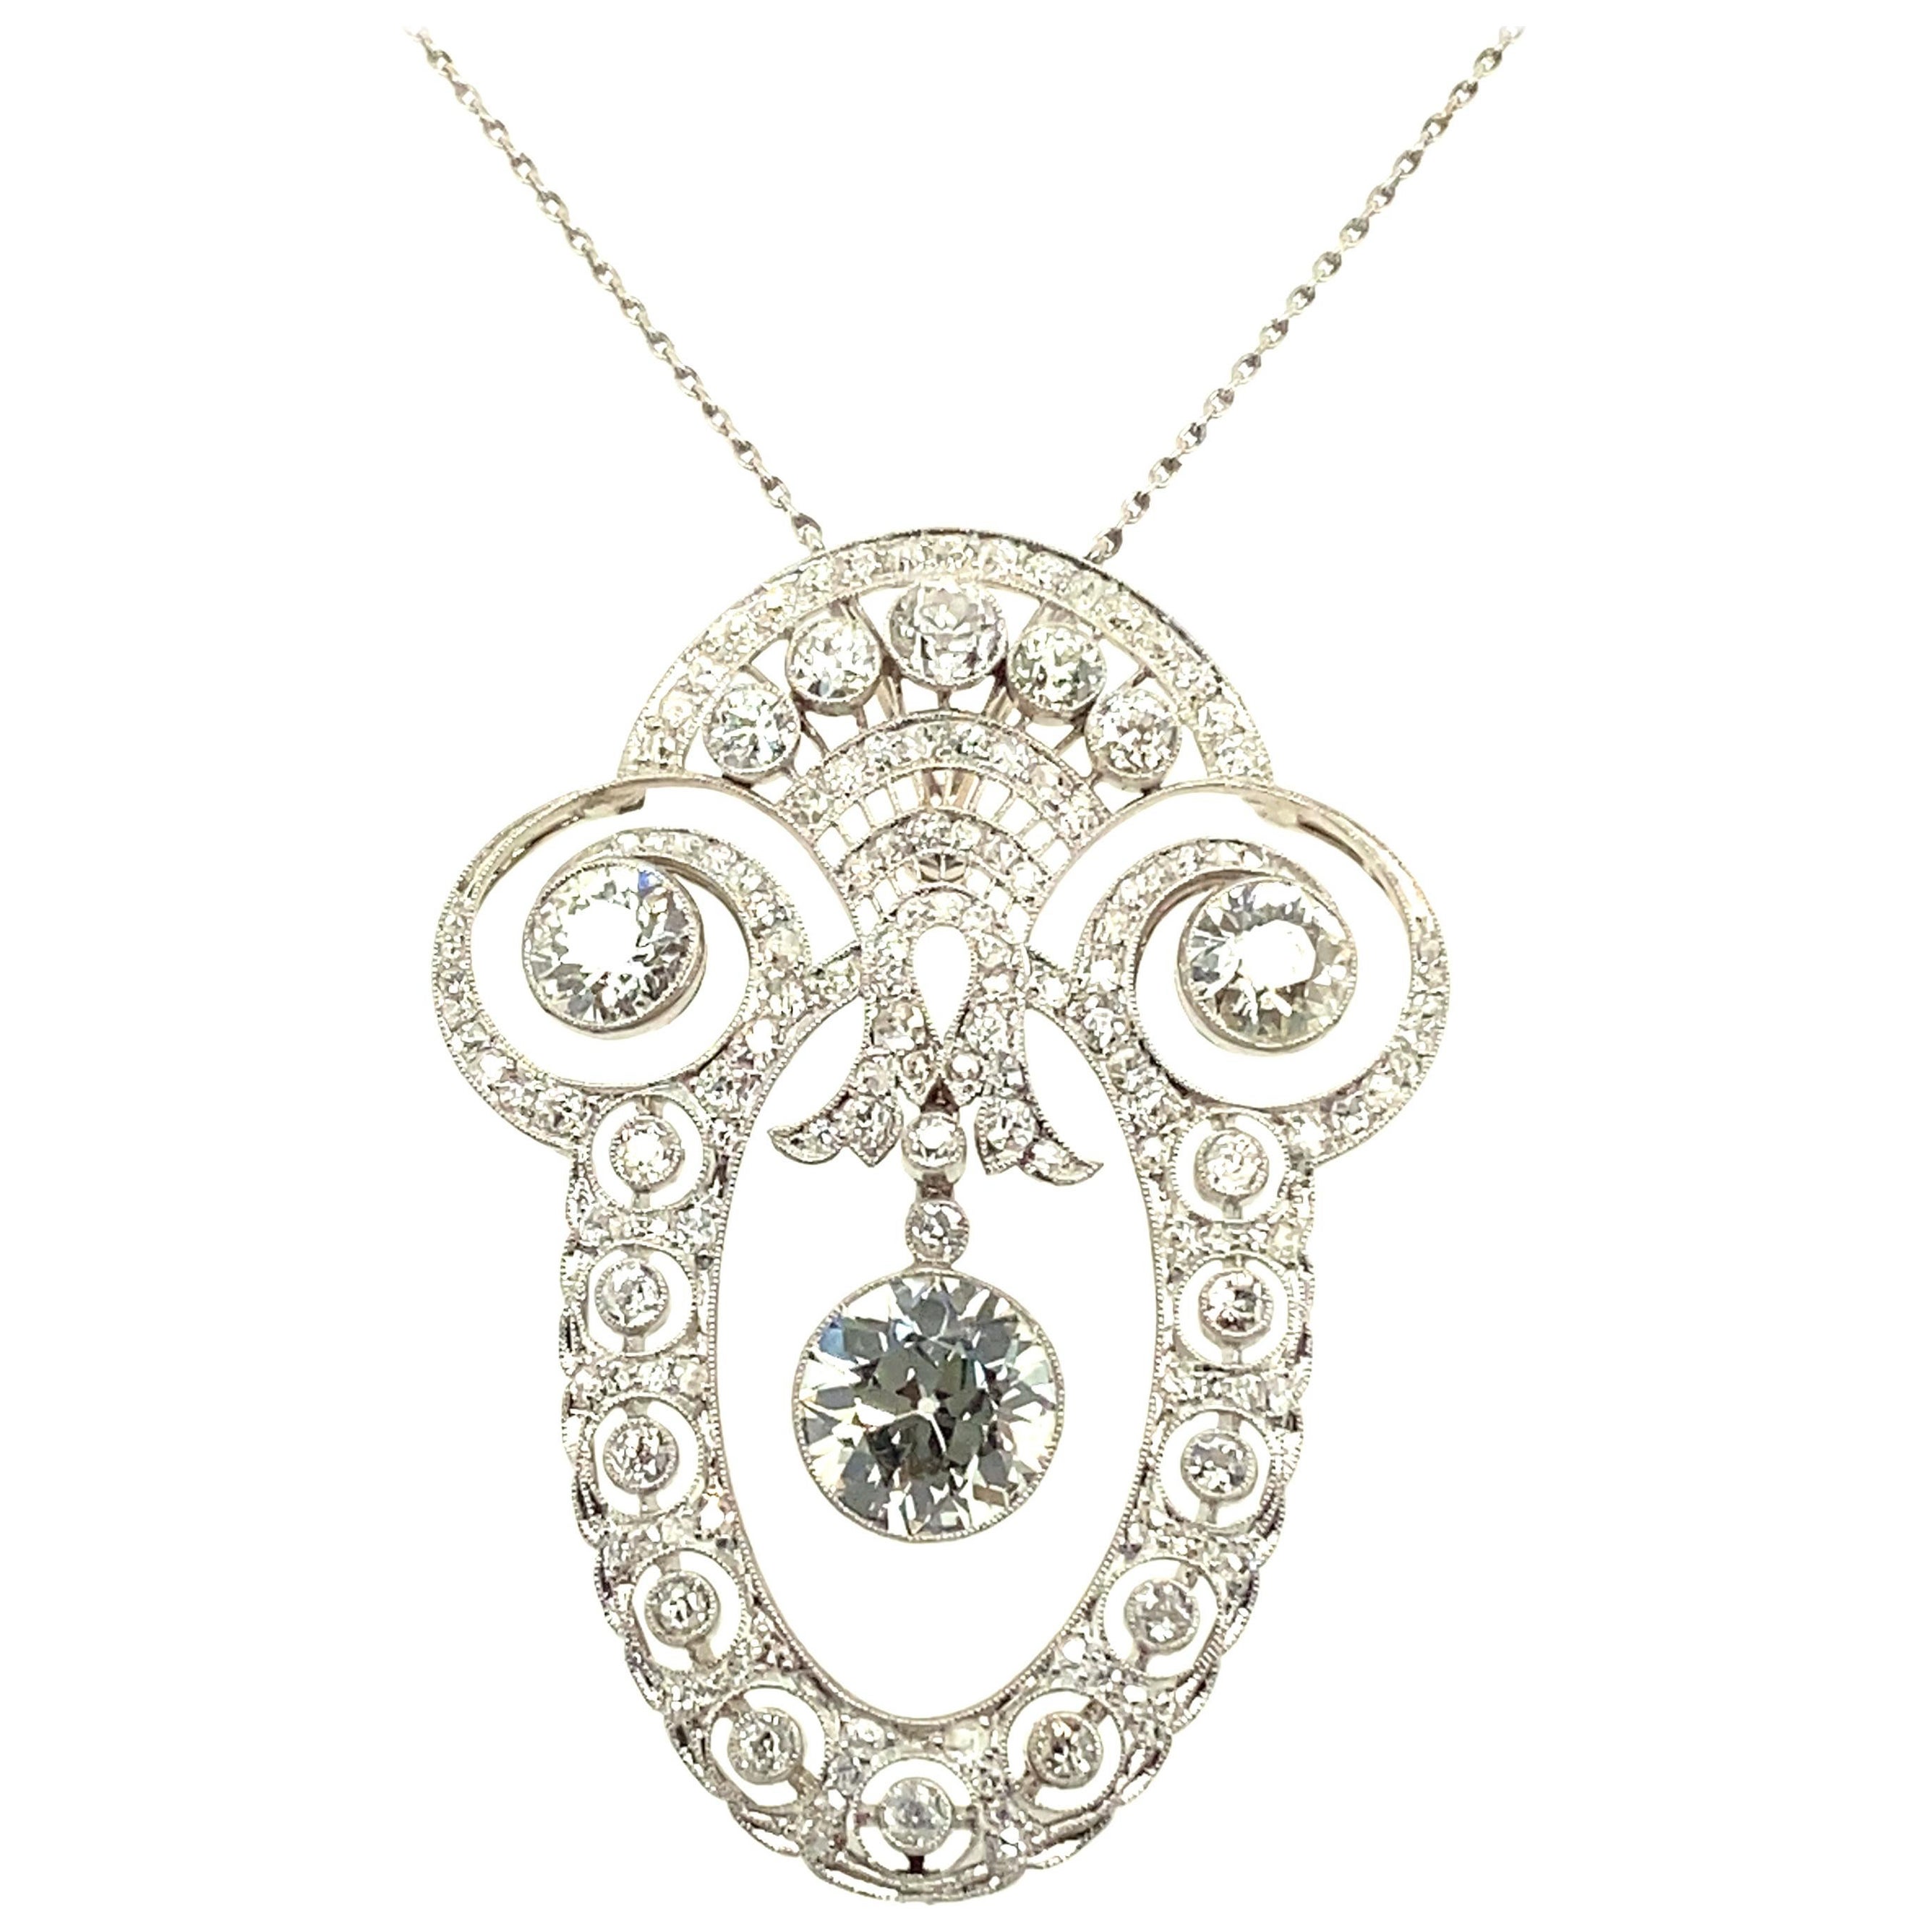 Wunderschöne edwardianische Diamant-Halskette aus Platin 950